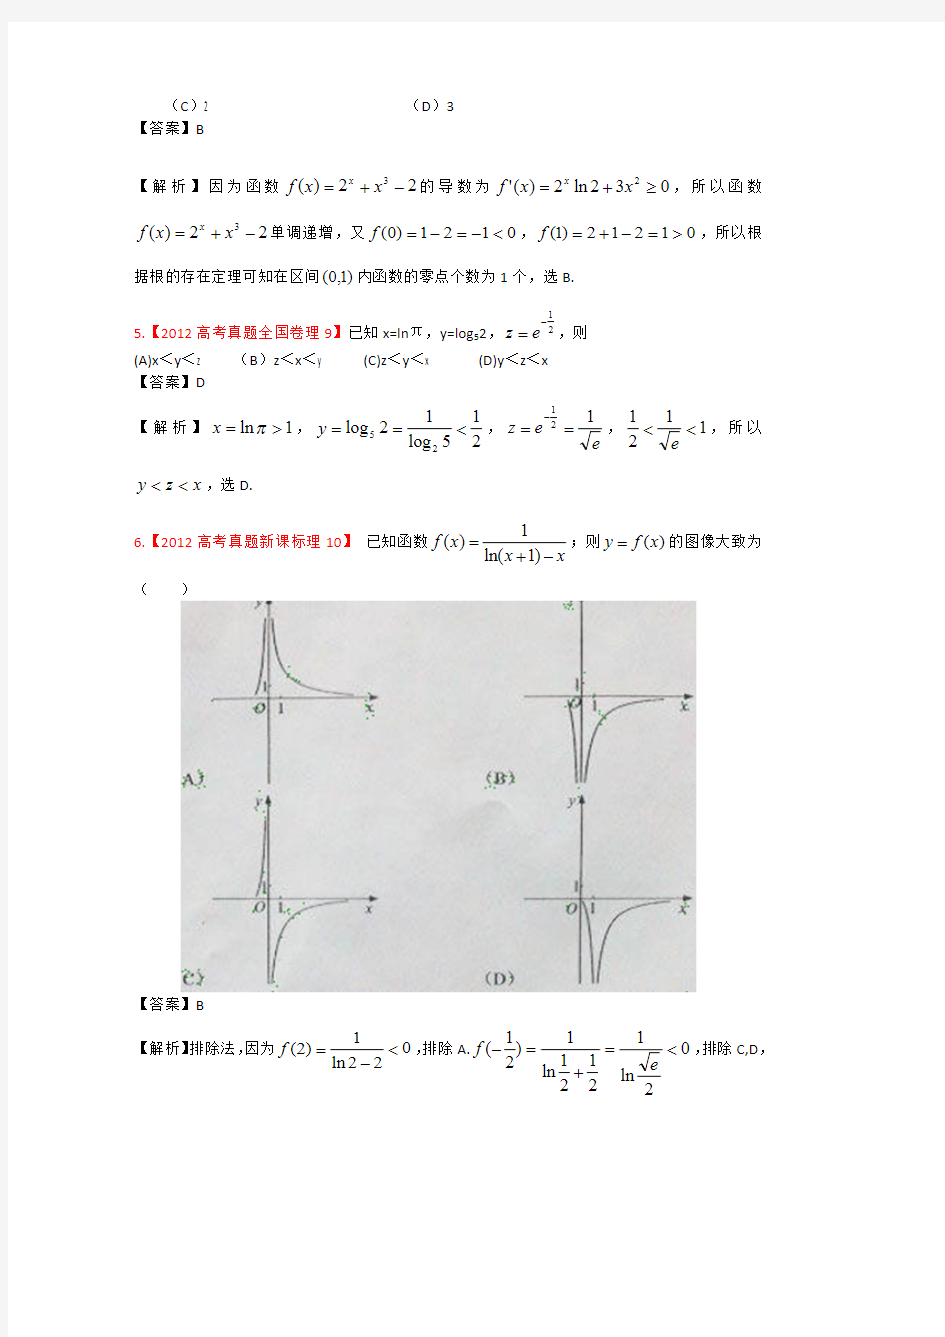 2012年高考真题汇编-理科数学(解析版)2：函数与方程